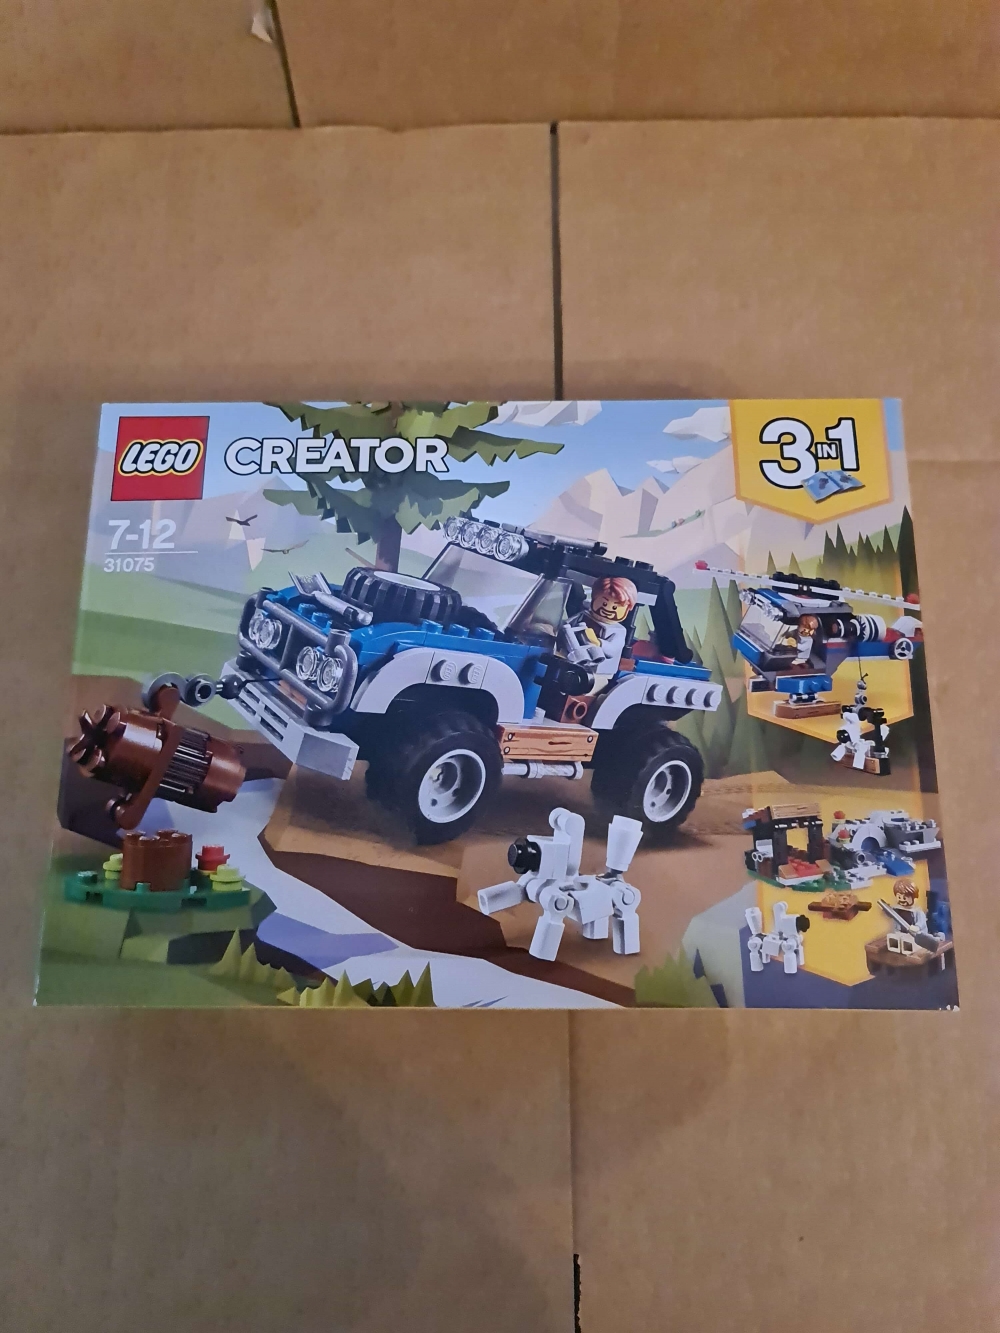 Sett 31075 fra Lego Creator serien.
Nytt og forseglet.